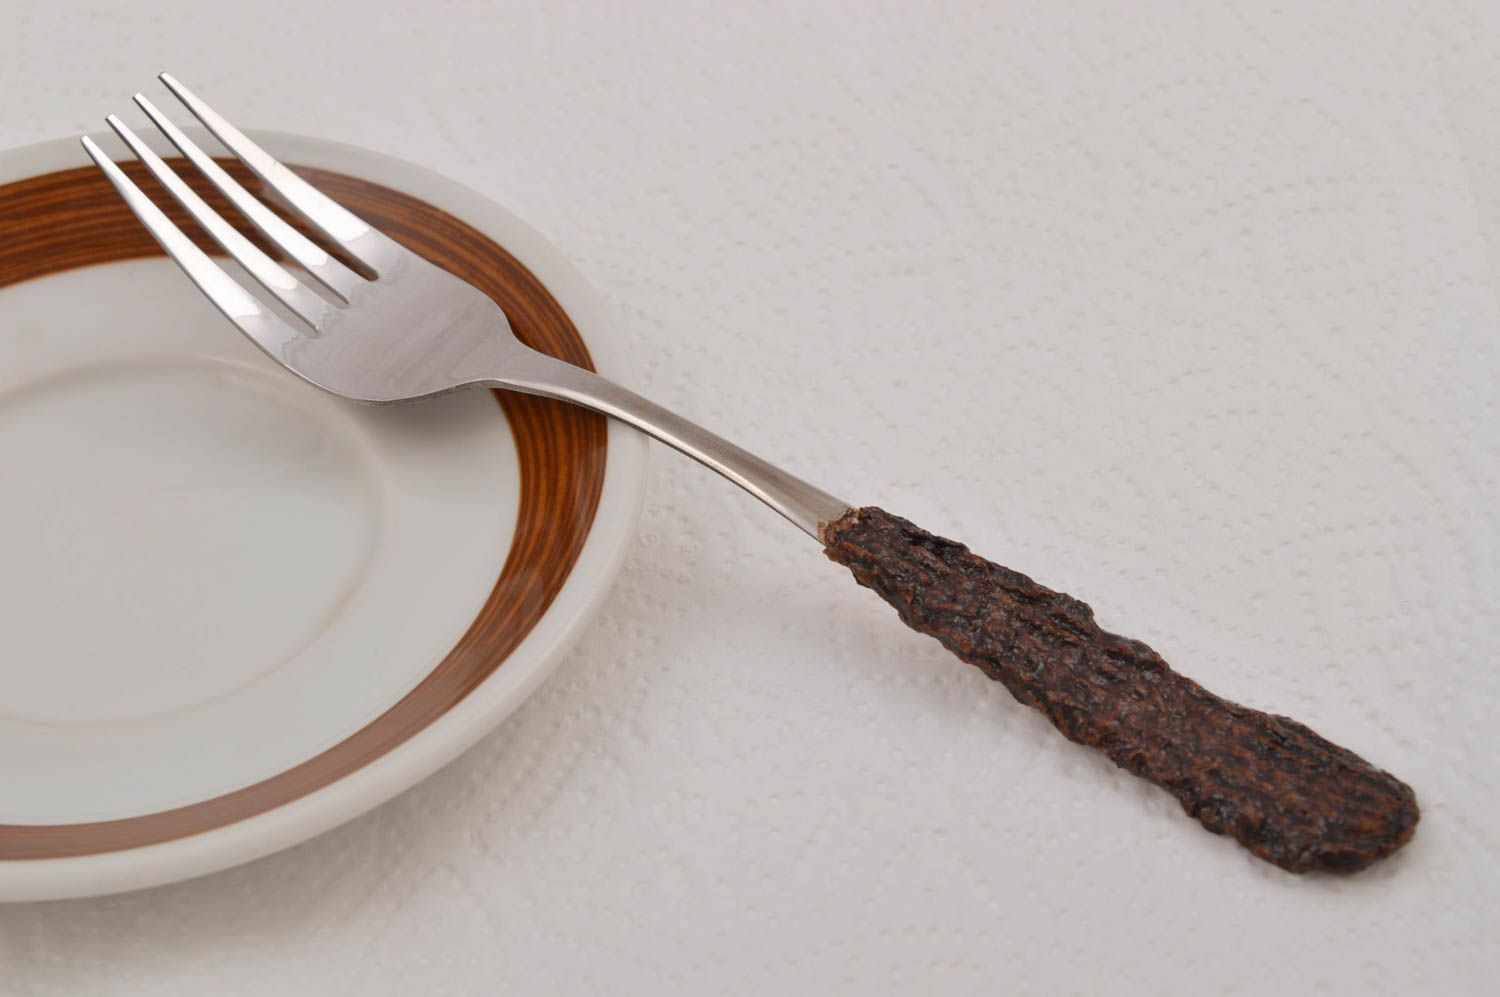 Handmade fork designer spork metal cutlery designer kitchen utensils gift ideas photo 1